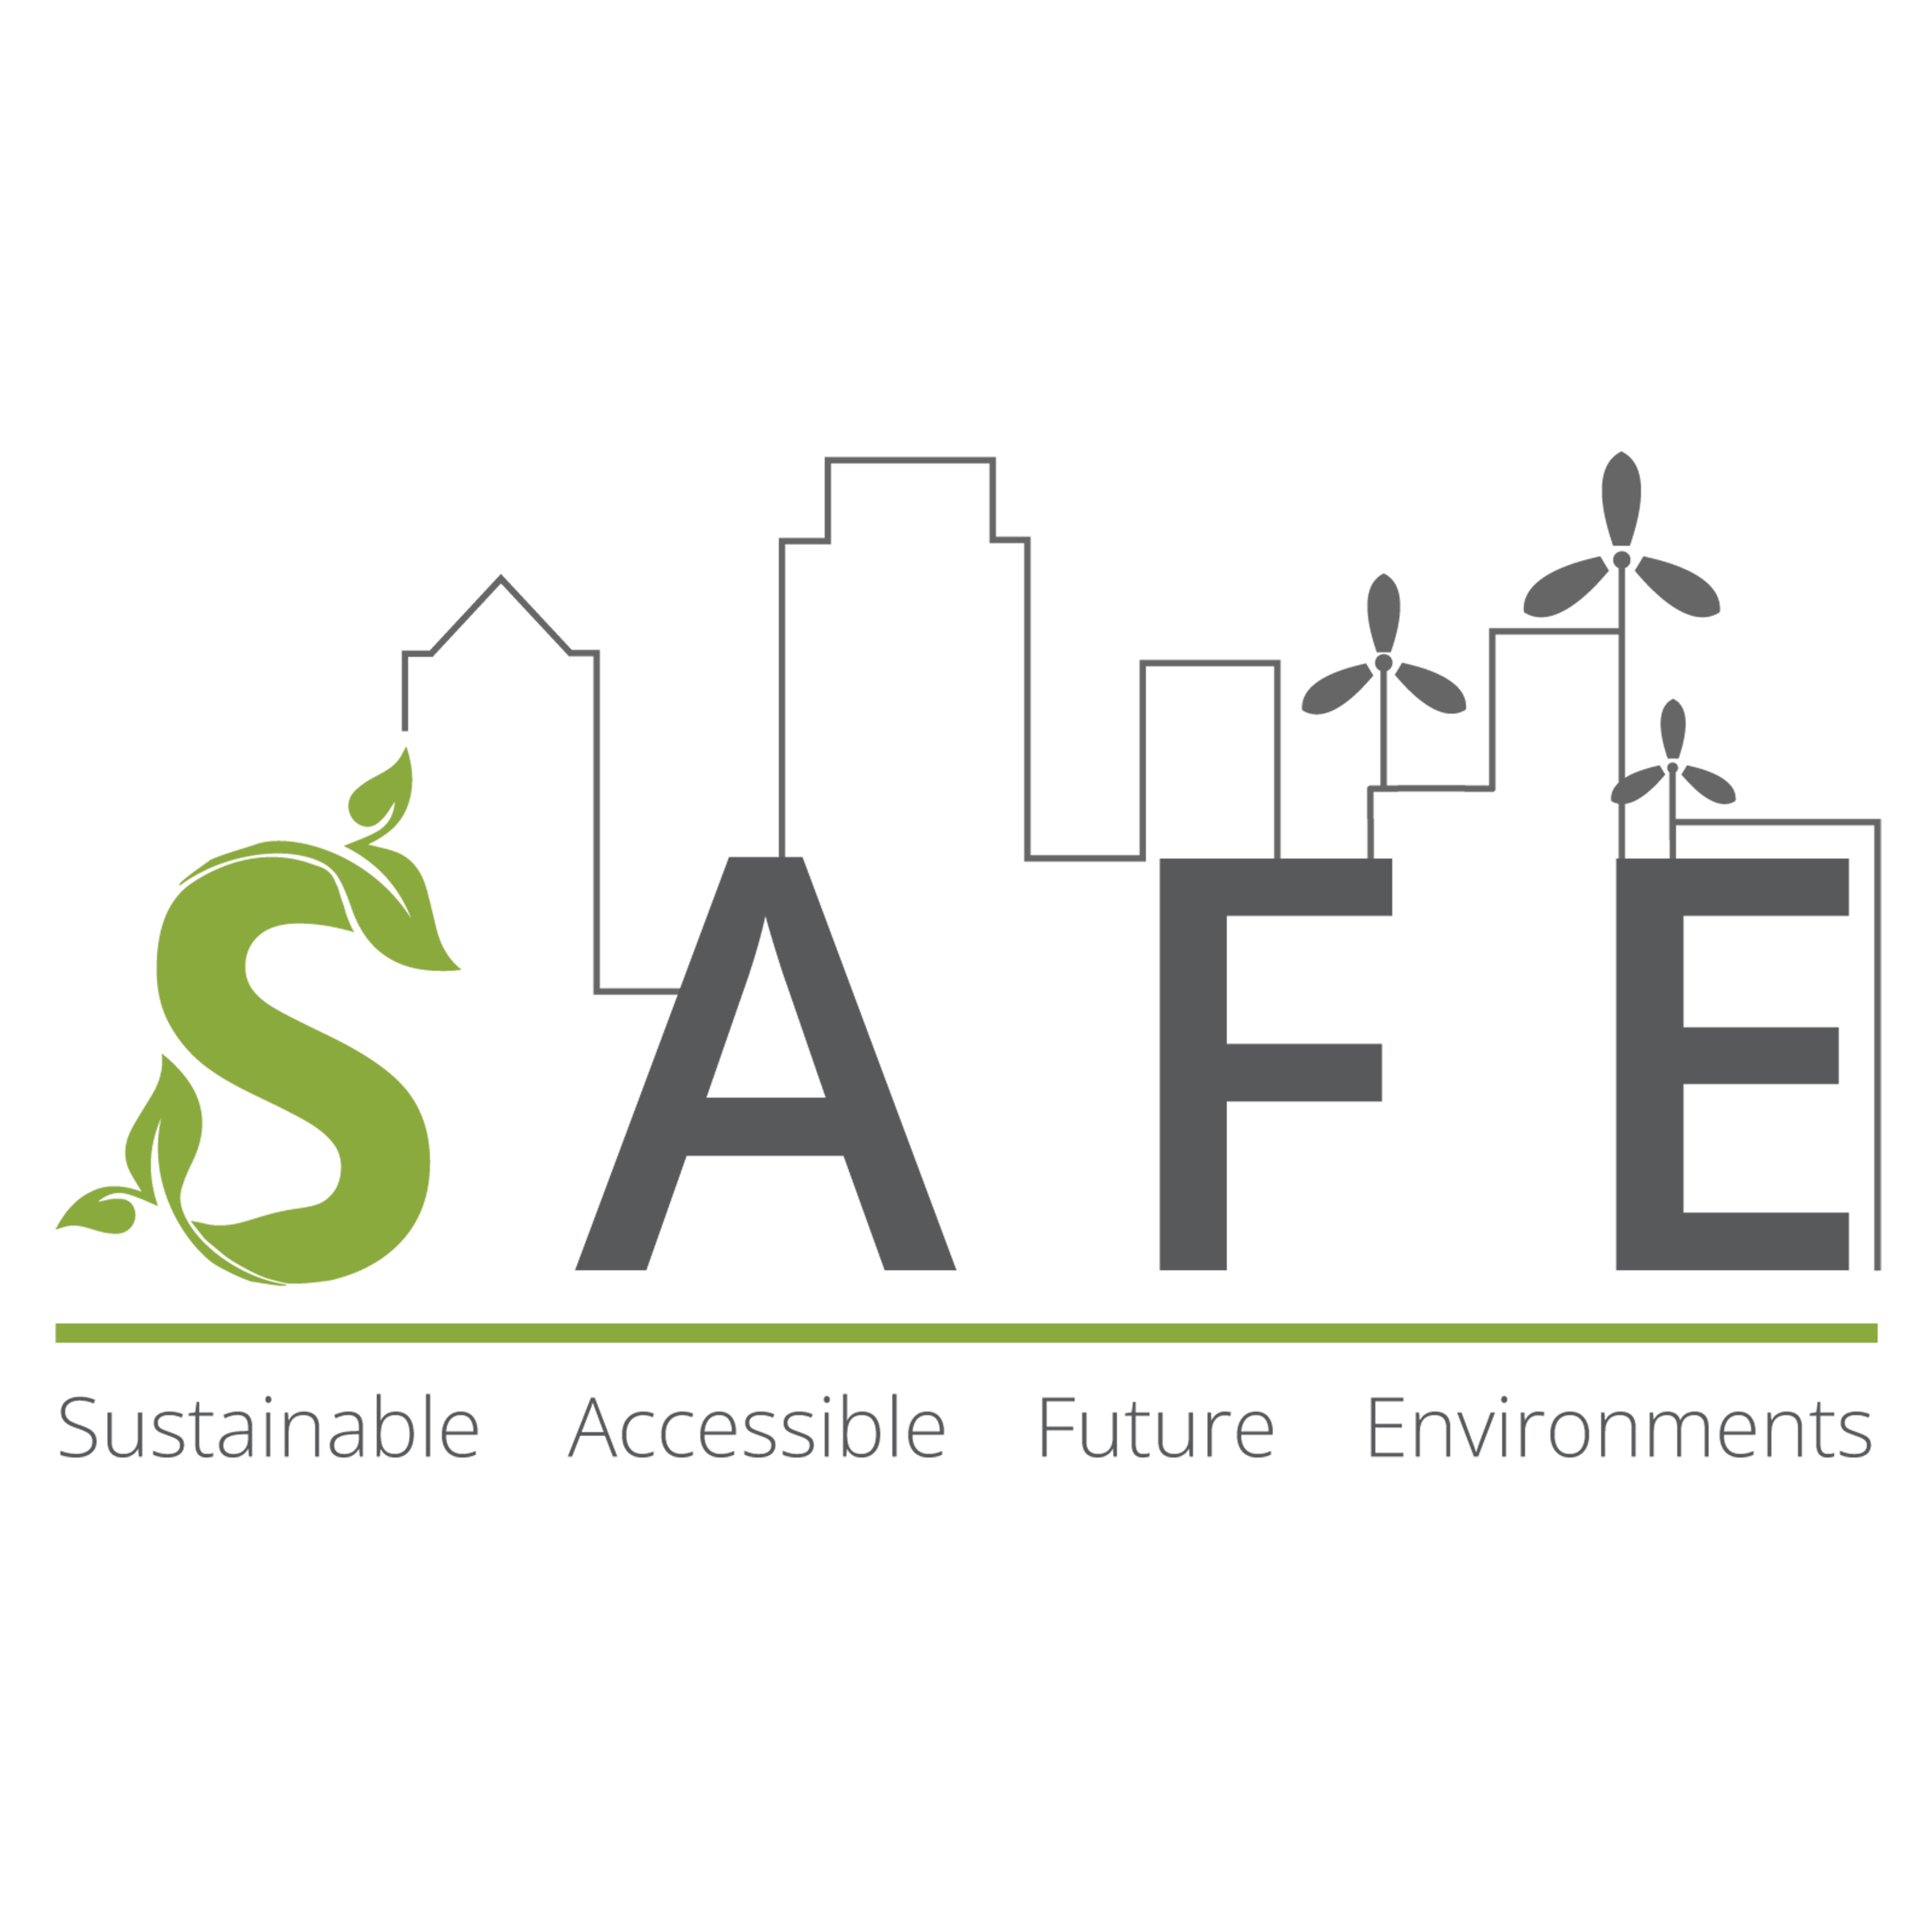 Logo SAFE